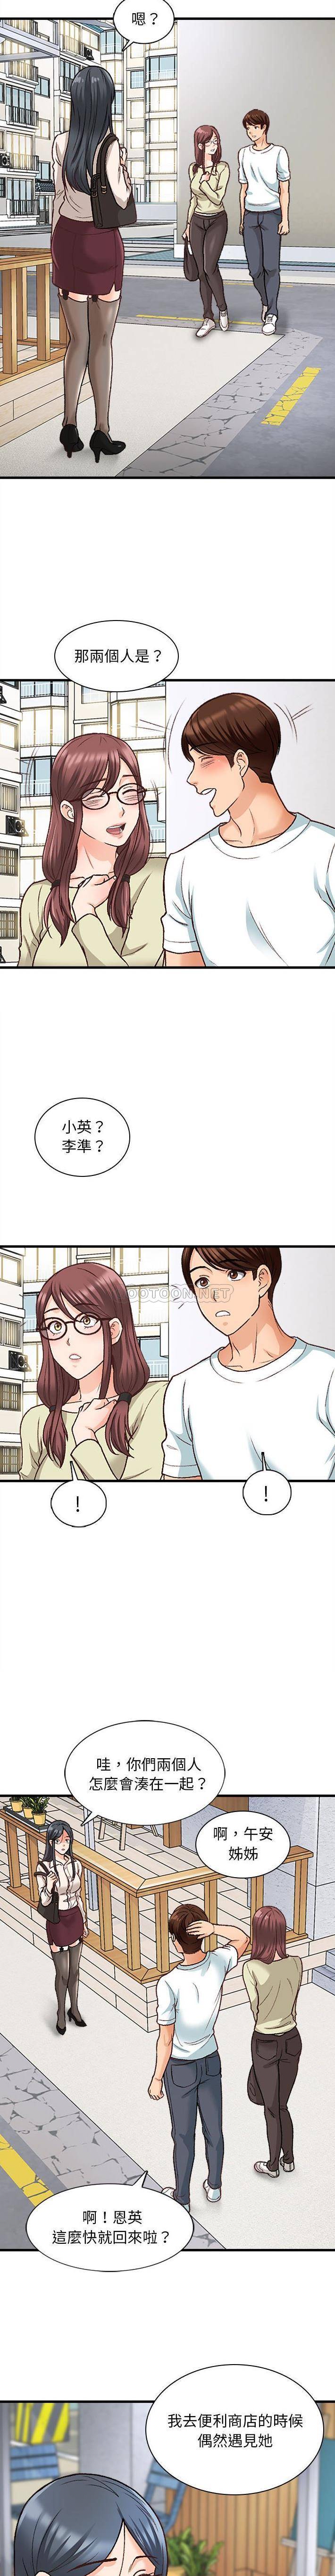 韩国污漫画 幸福公寓 第10话 2